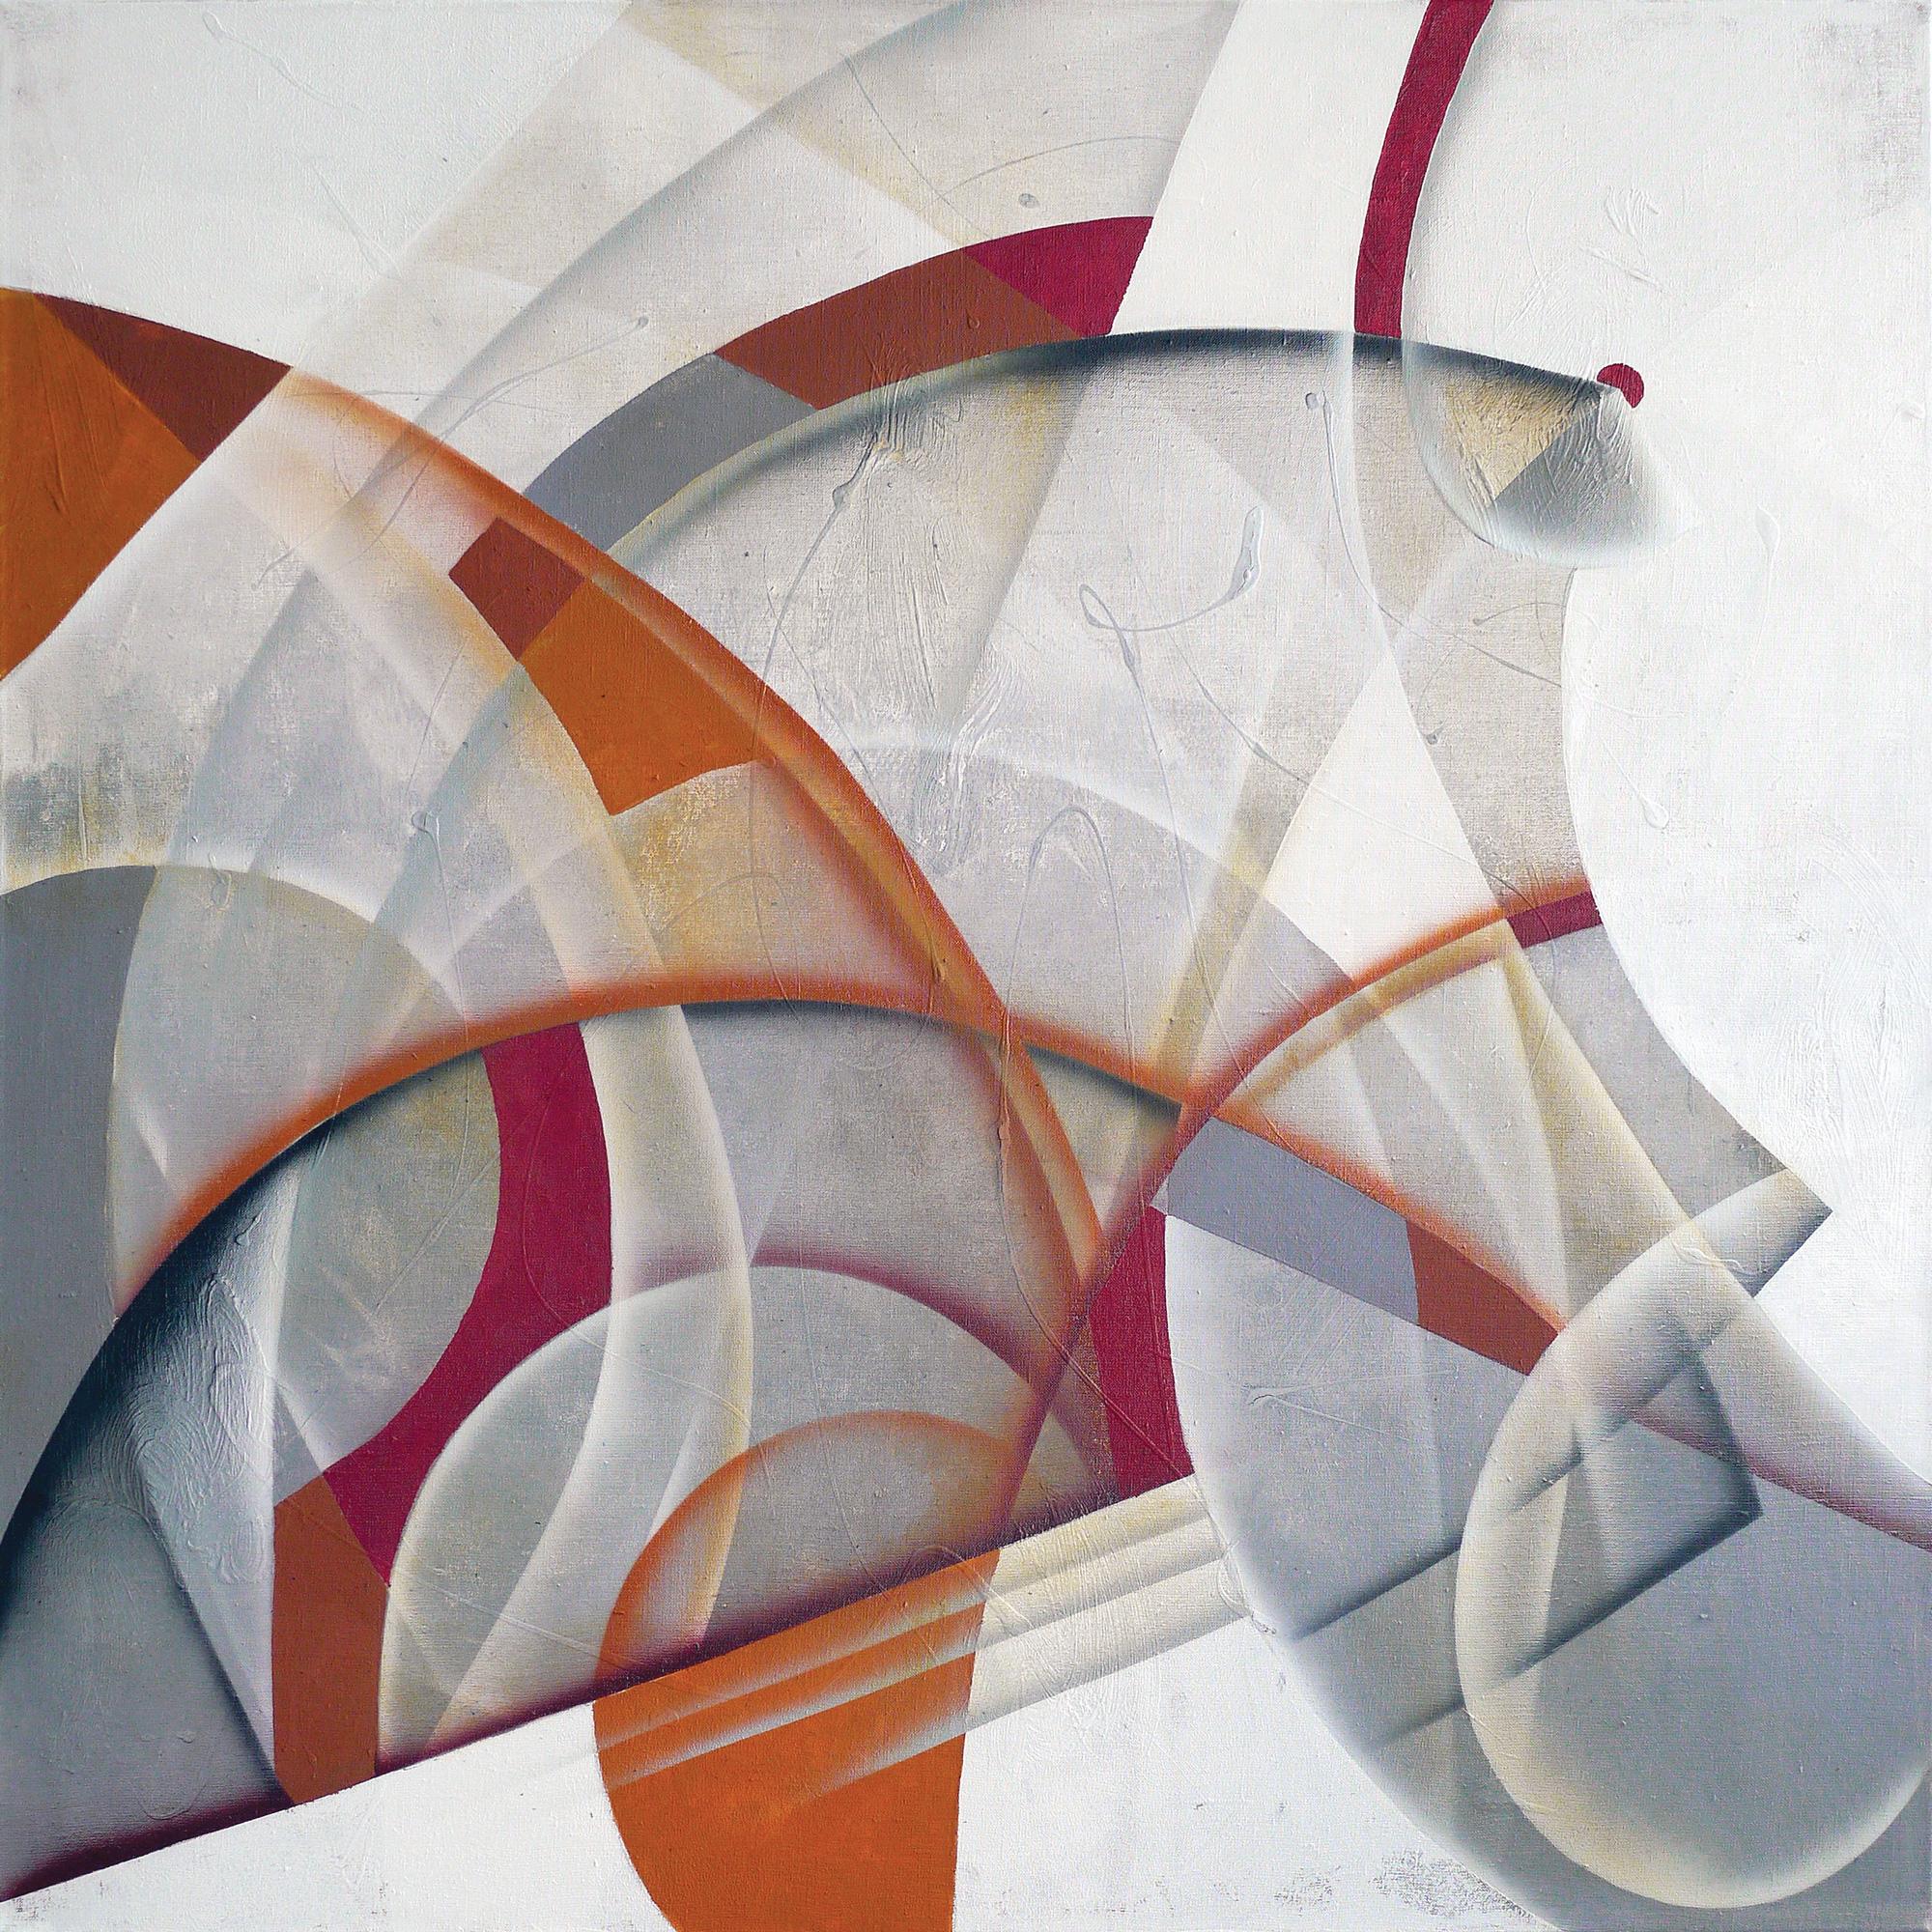 Abstract Painting Olga Rikun - GAMES à pois rouges/CONSTRUCTIVISM GAMES, 100x100cm